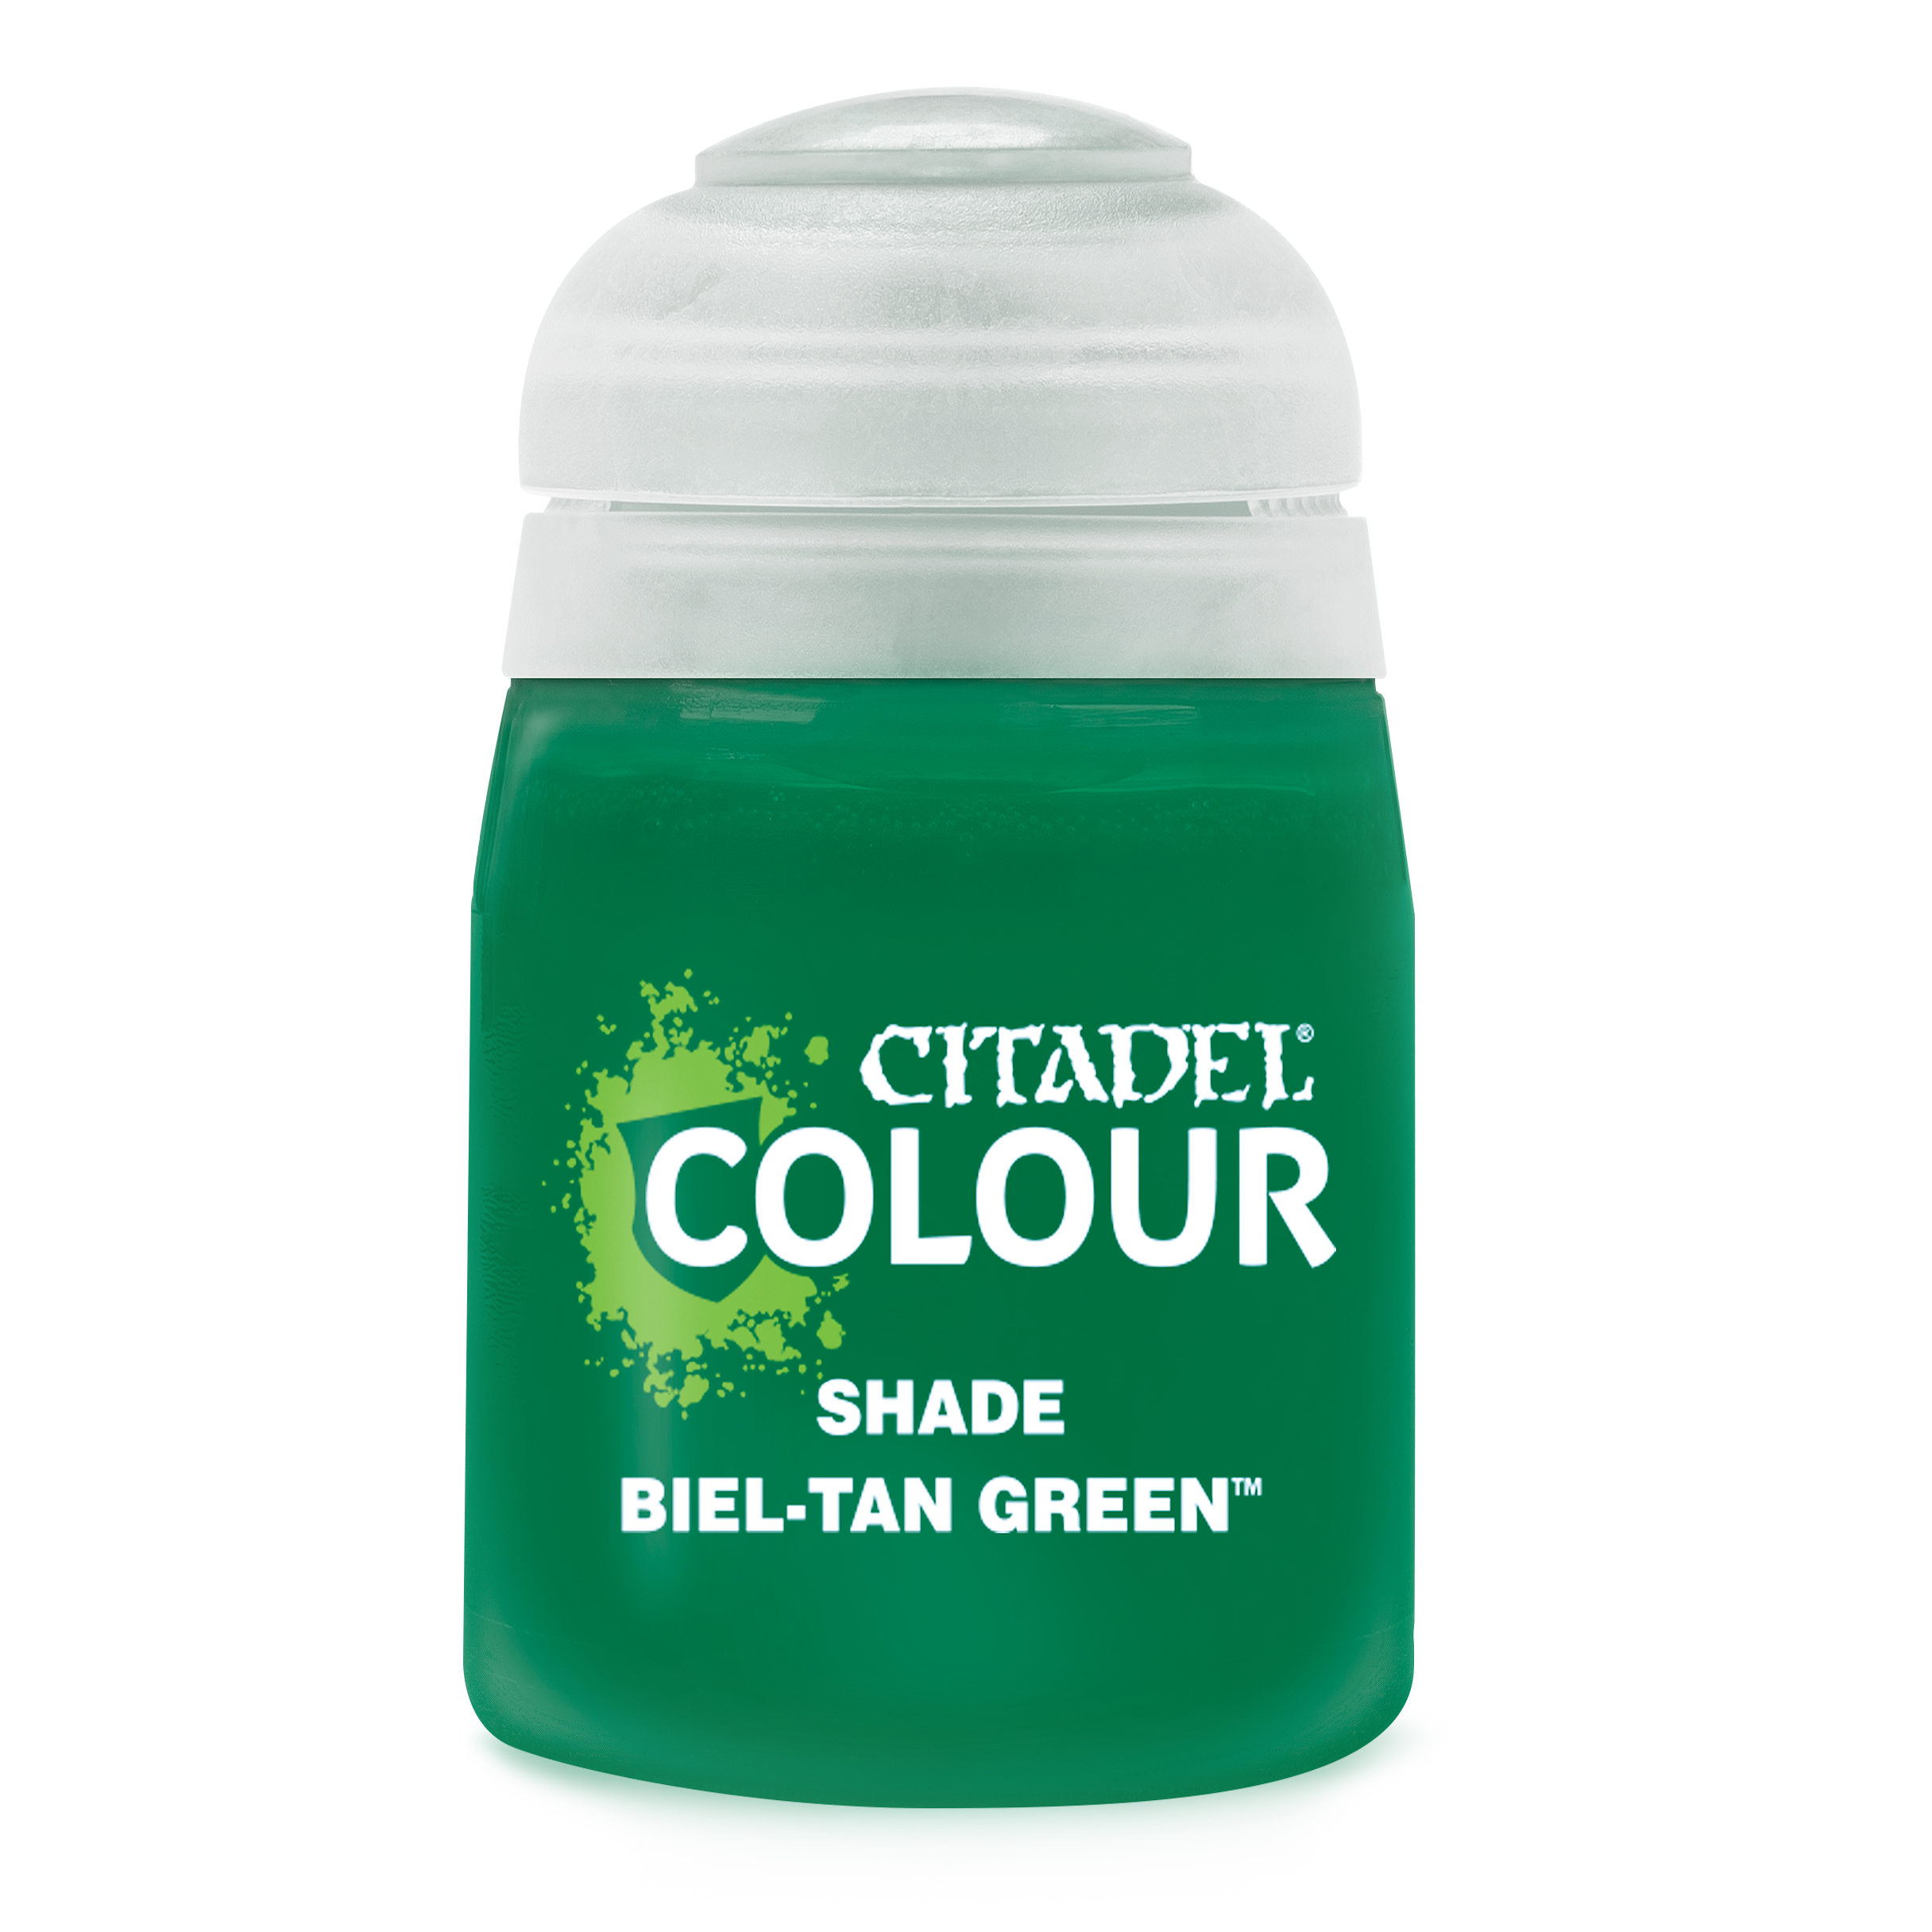 biel tan green pot